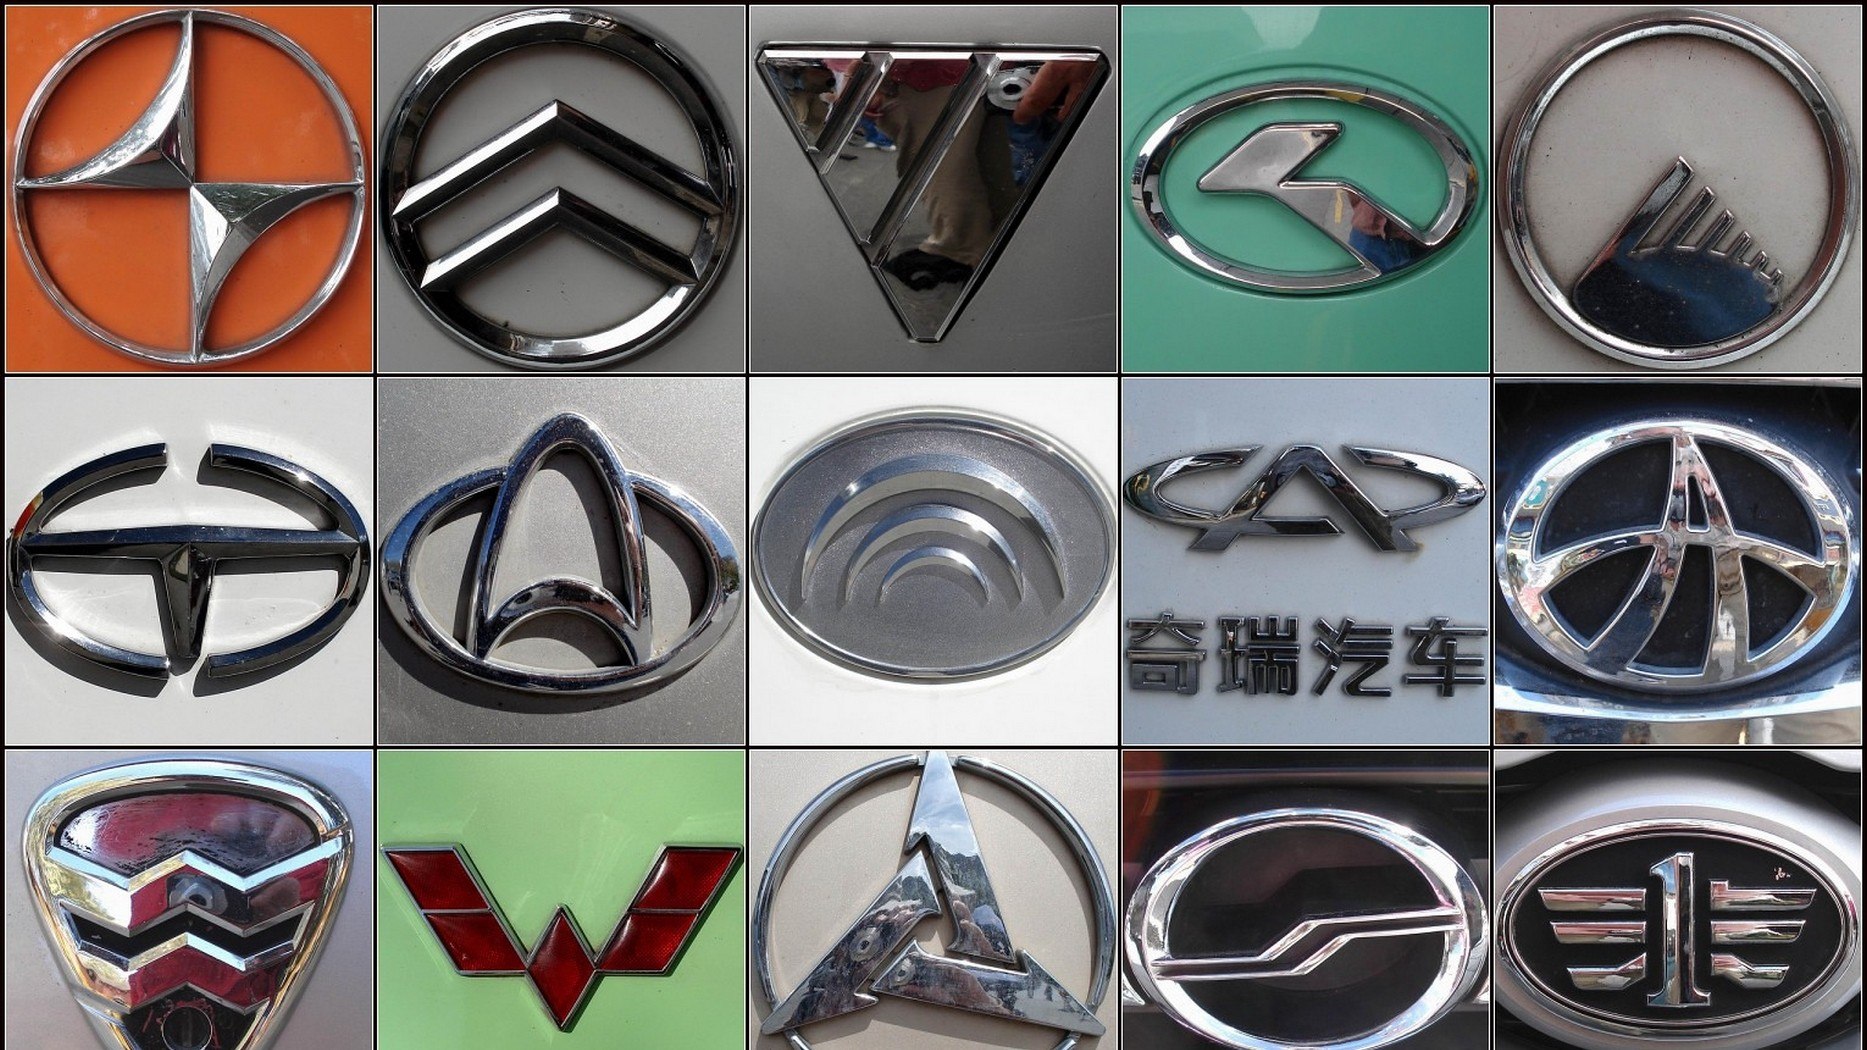 Значки китайских марок авто. Значки автомобилей. Китайские автомобили марки. Китайские марки авто значки. Логотипы японских автомобилей.